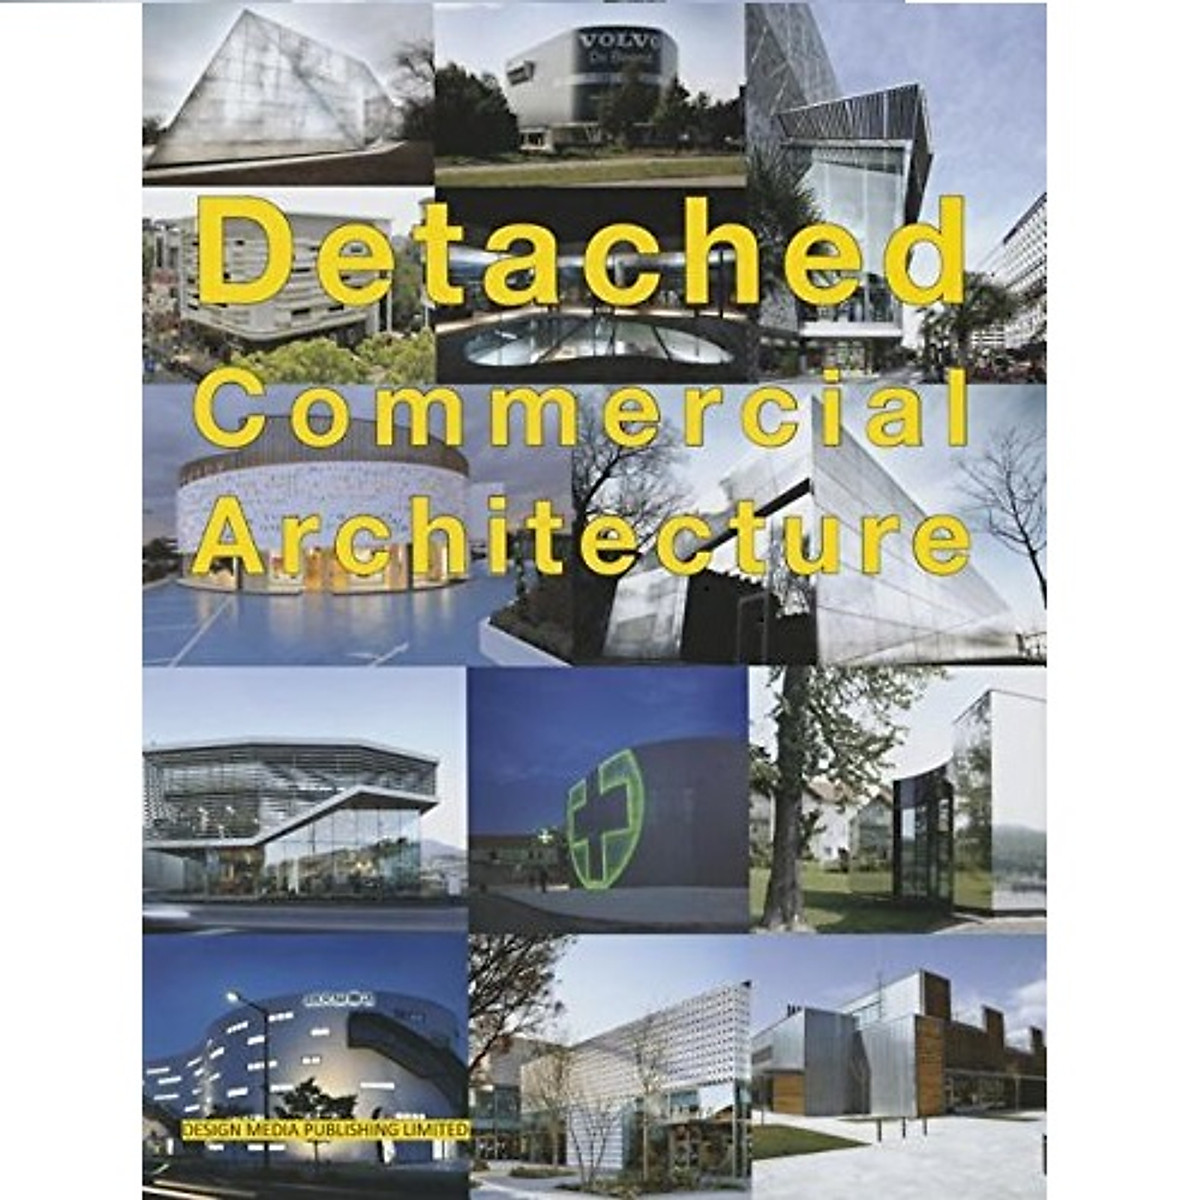 Detached Commercial Architecture